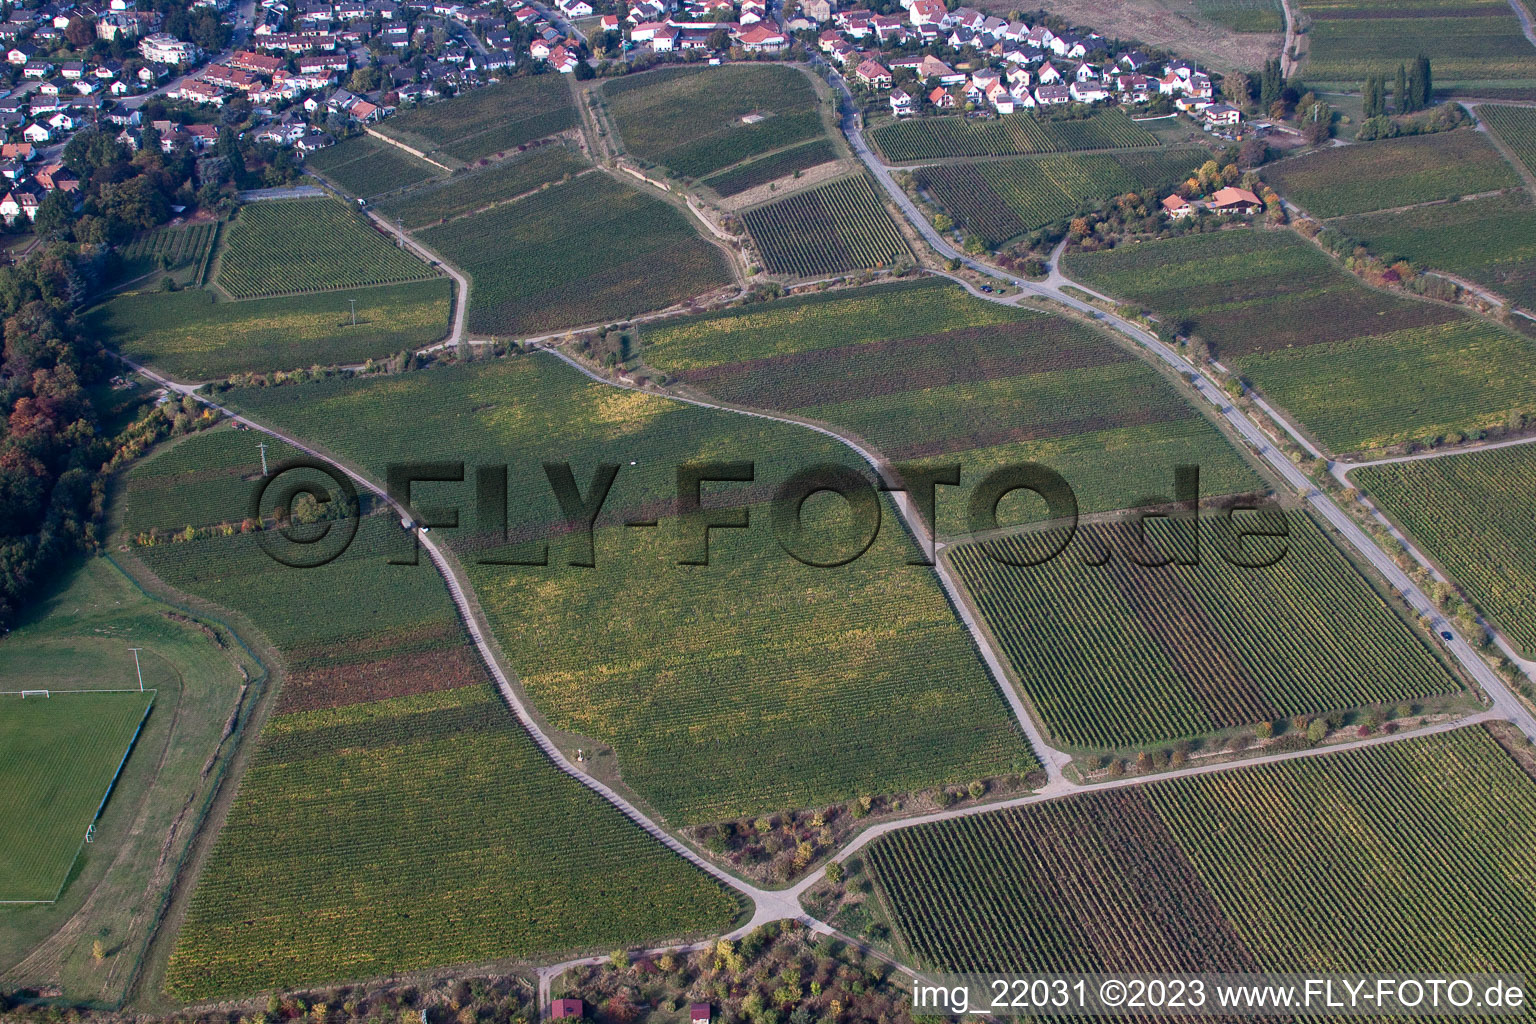 Ortsteil Königsbach in Neustadt an der Weinstraße im Bundesland Rheinland-Pfalz, Deutschland aus der Drohnenperspektive